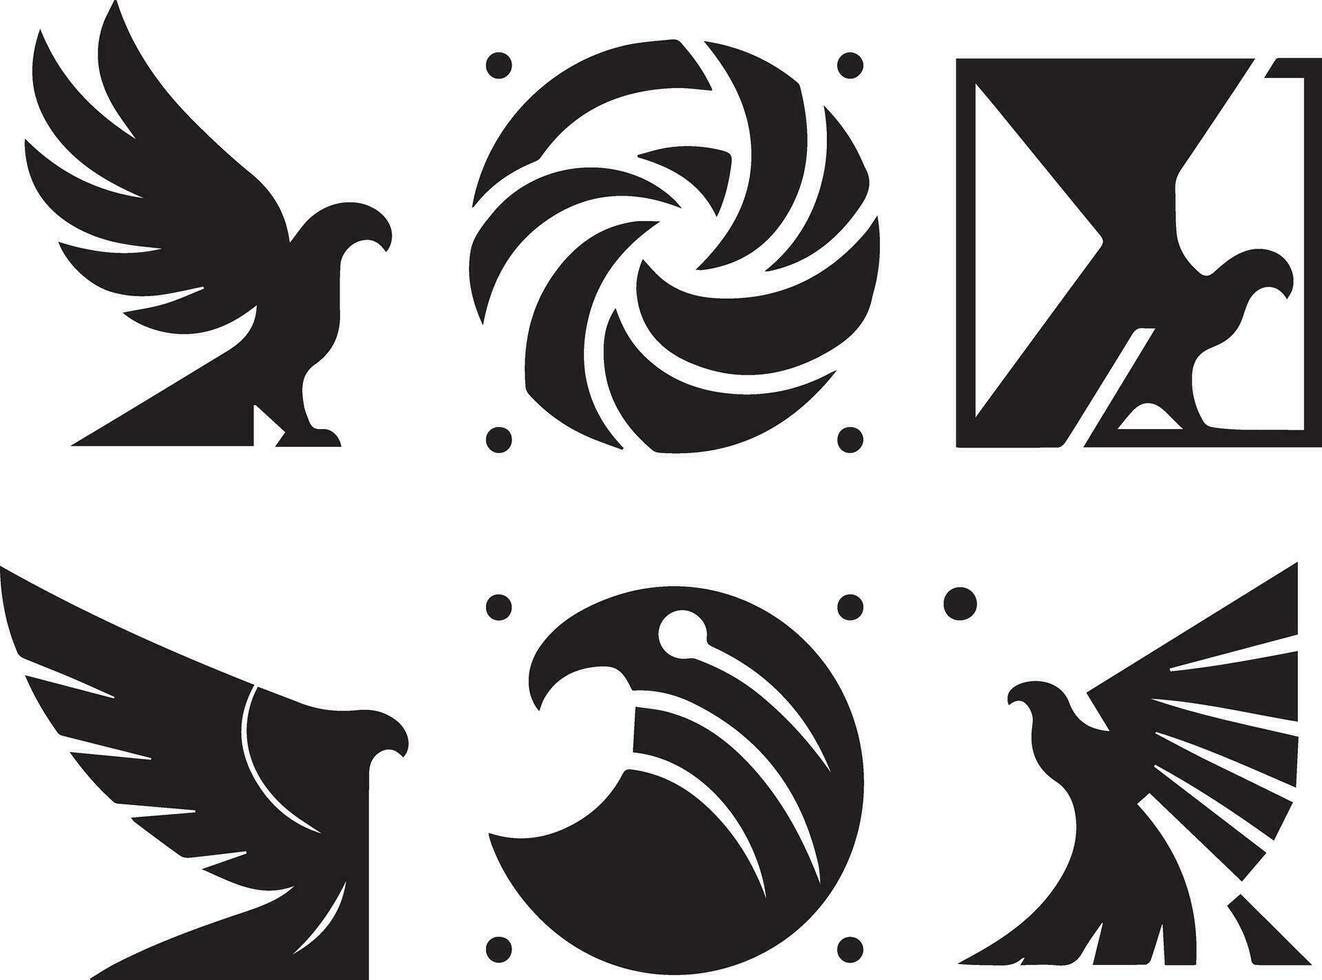 Preto silhueta sólido vetor conjunto do ícones como, águia, pássaro, falcão, Falcão, pipa falcão, Águia emblema e tão sobre.